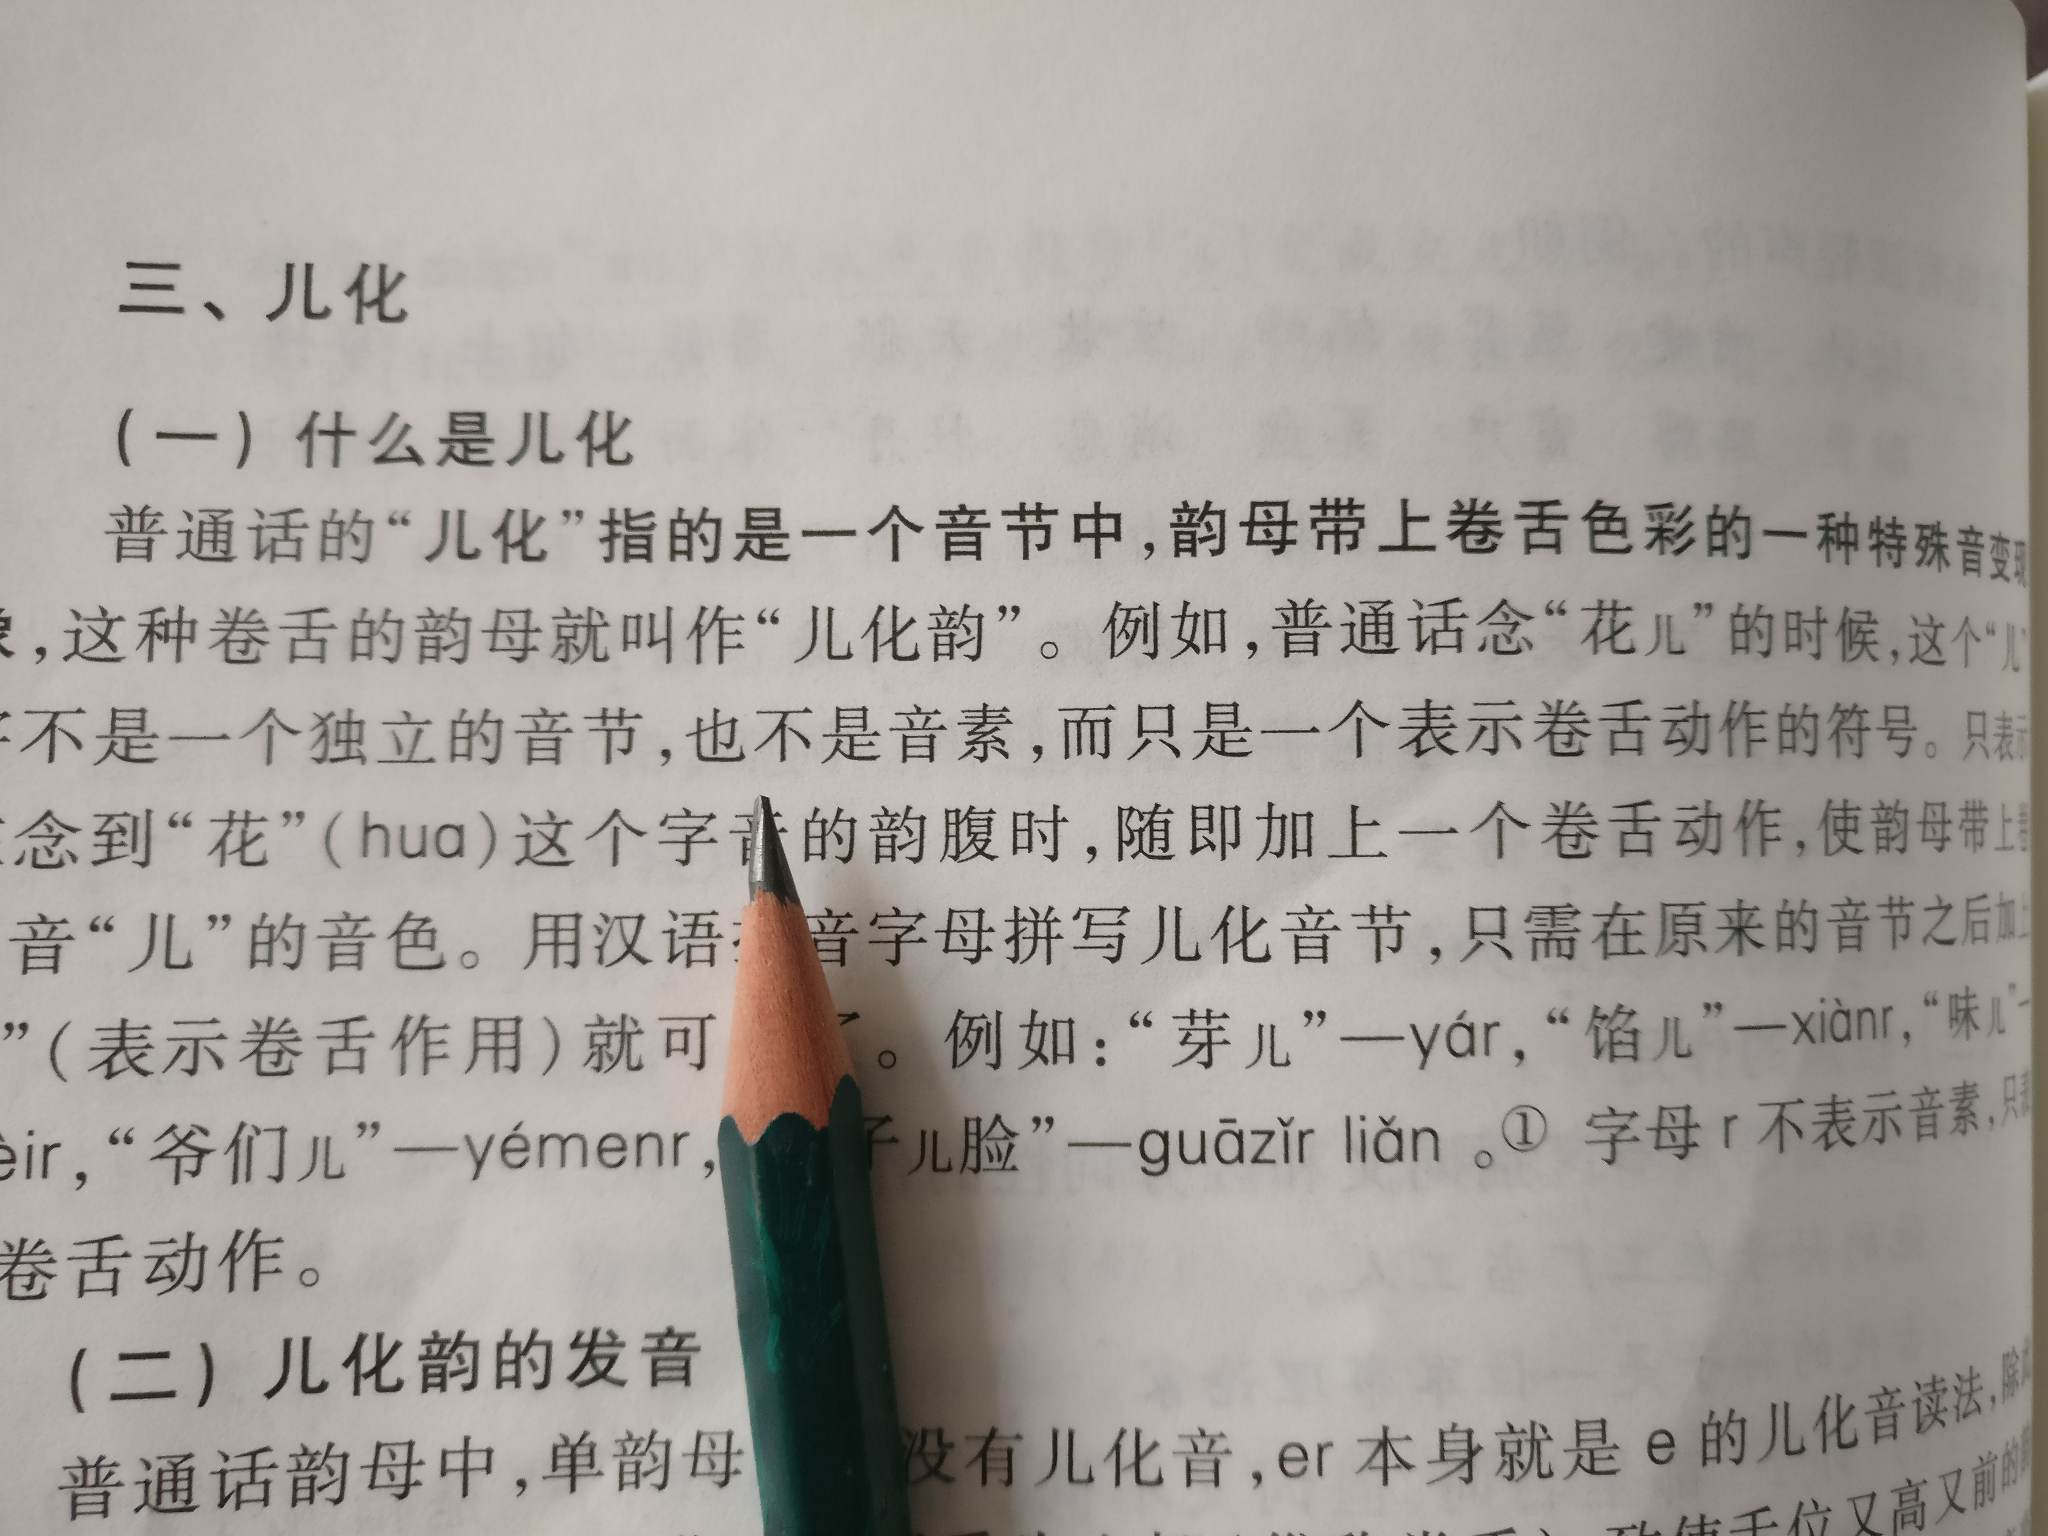 现代汉语中,一个音节最多可以有几个音素?